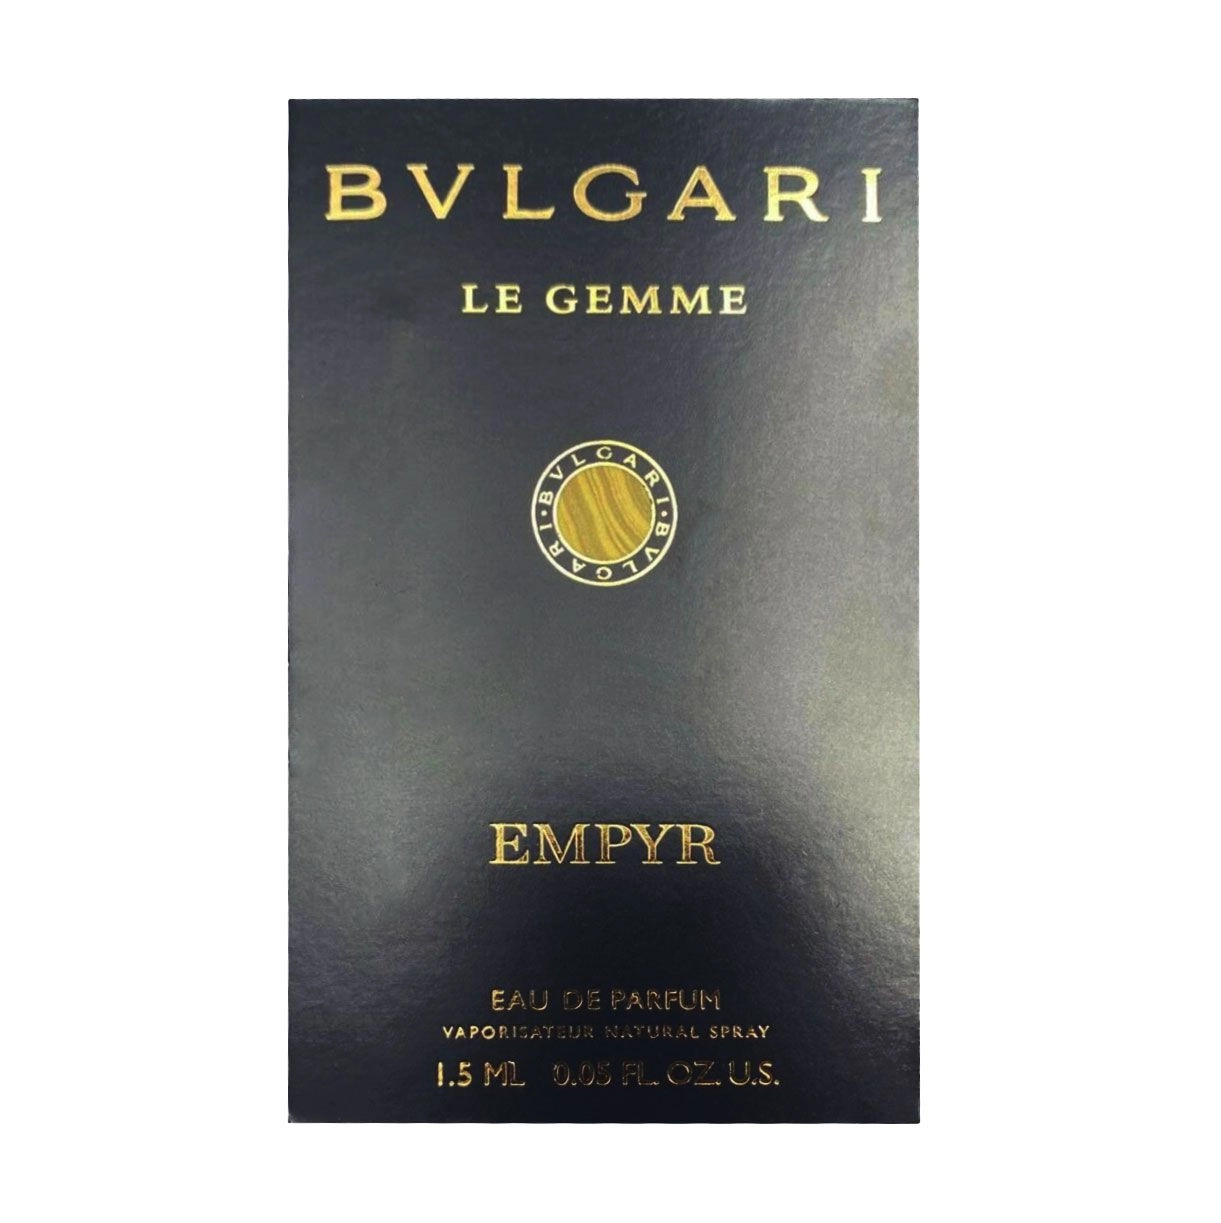 Bvlgari Le Gemme Empyr Парфюмированная вода мужская, 1.5 мл (пробник) - фото N1